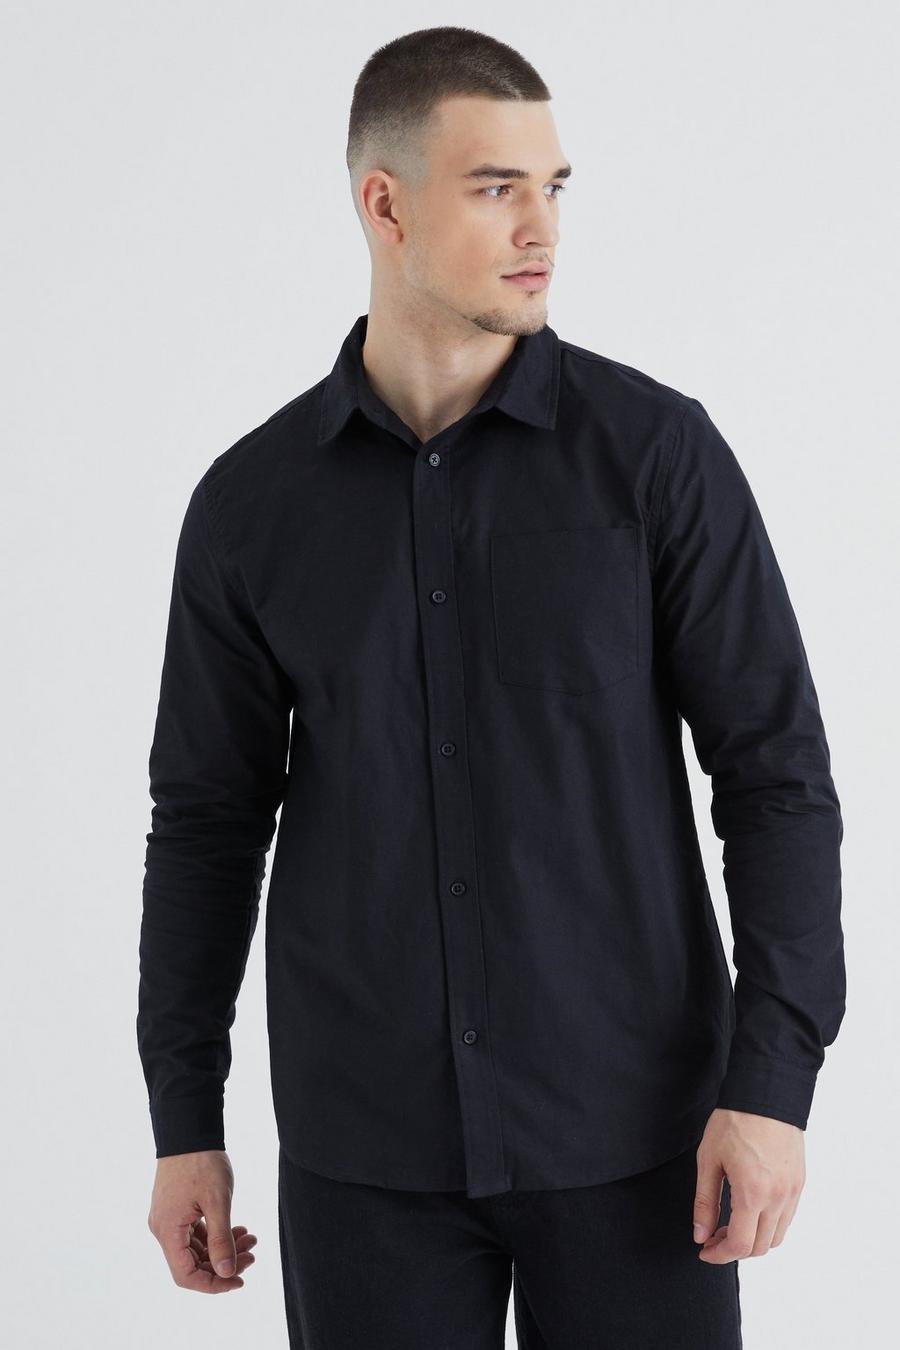 Black Tall Long Sleeve Oxford Shirt